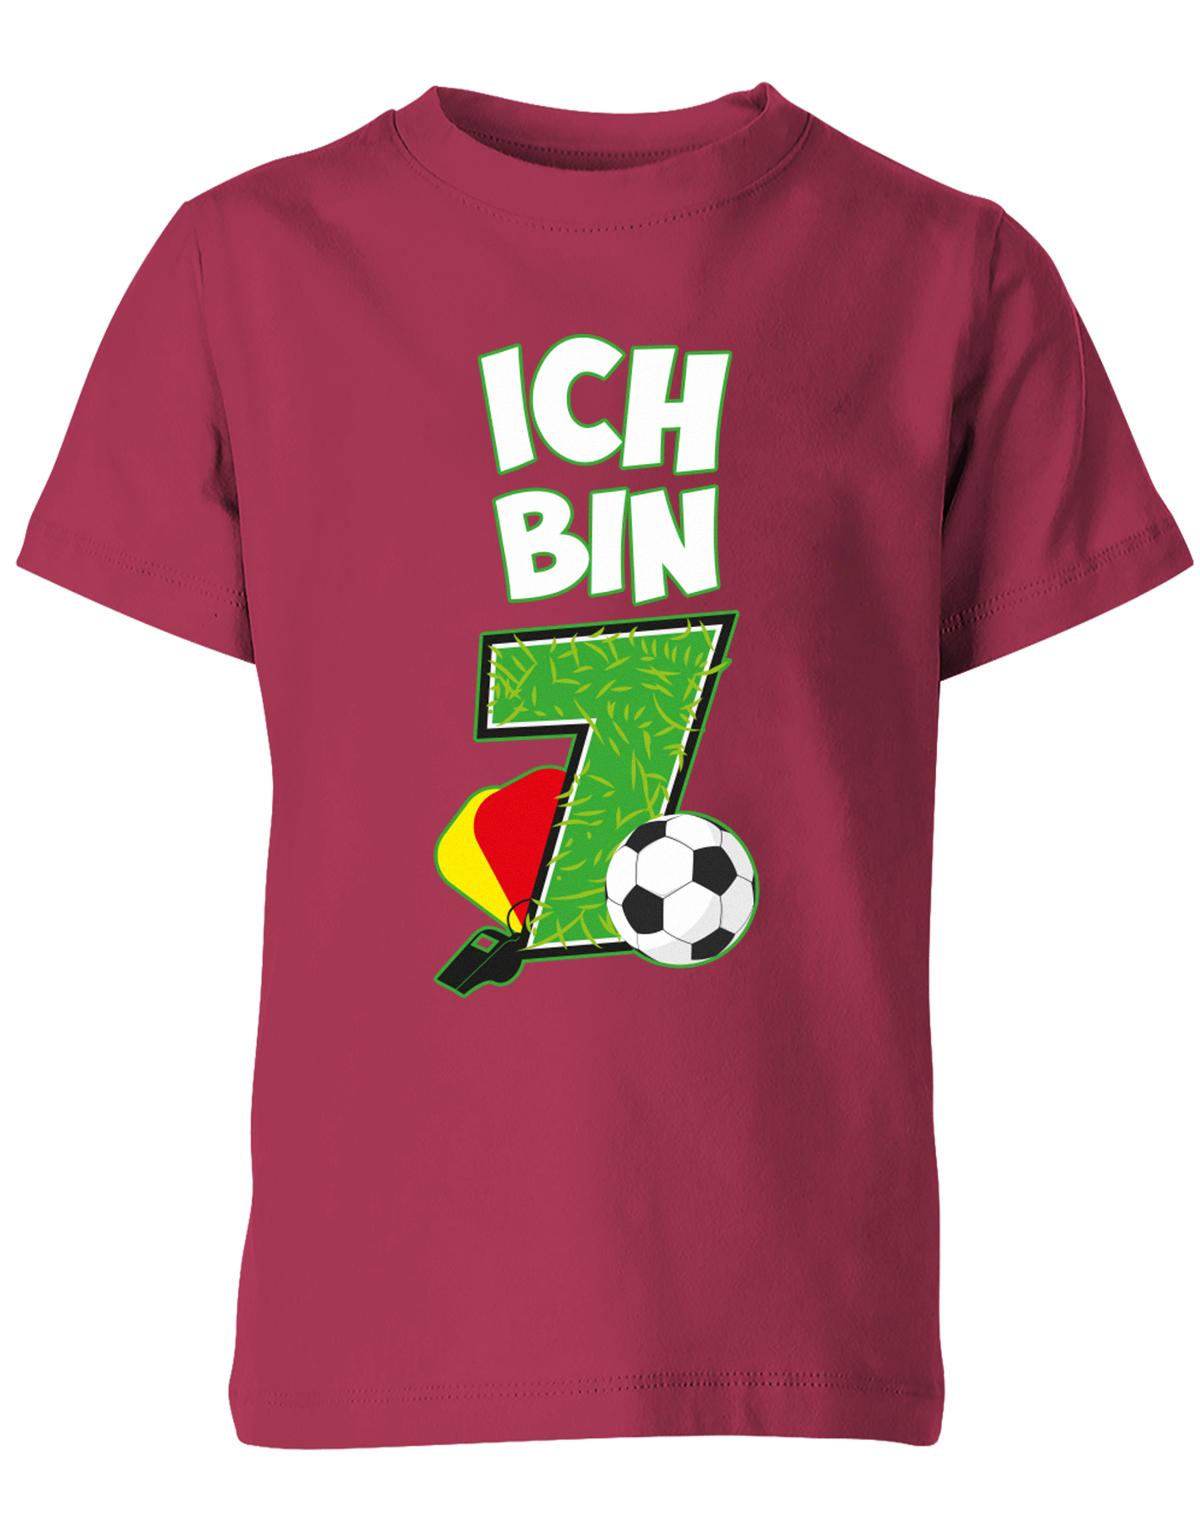 ich-bin-7-fussball-rote-gelbe-karte-geburtstag-fussballer-shirt-kinder-shirt-sorbet